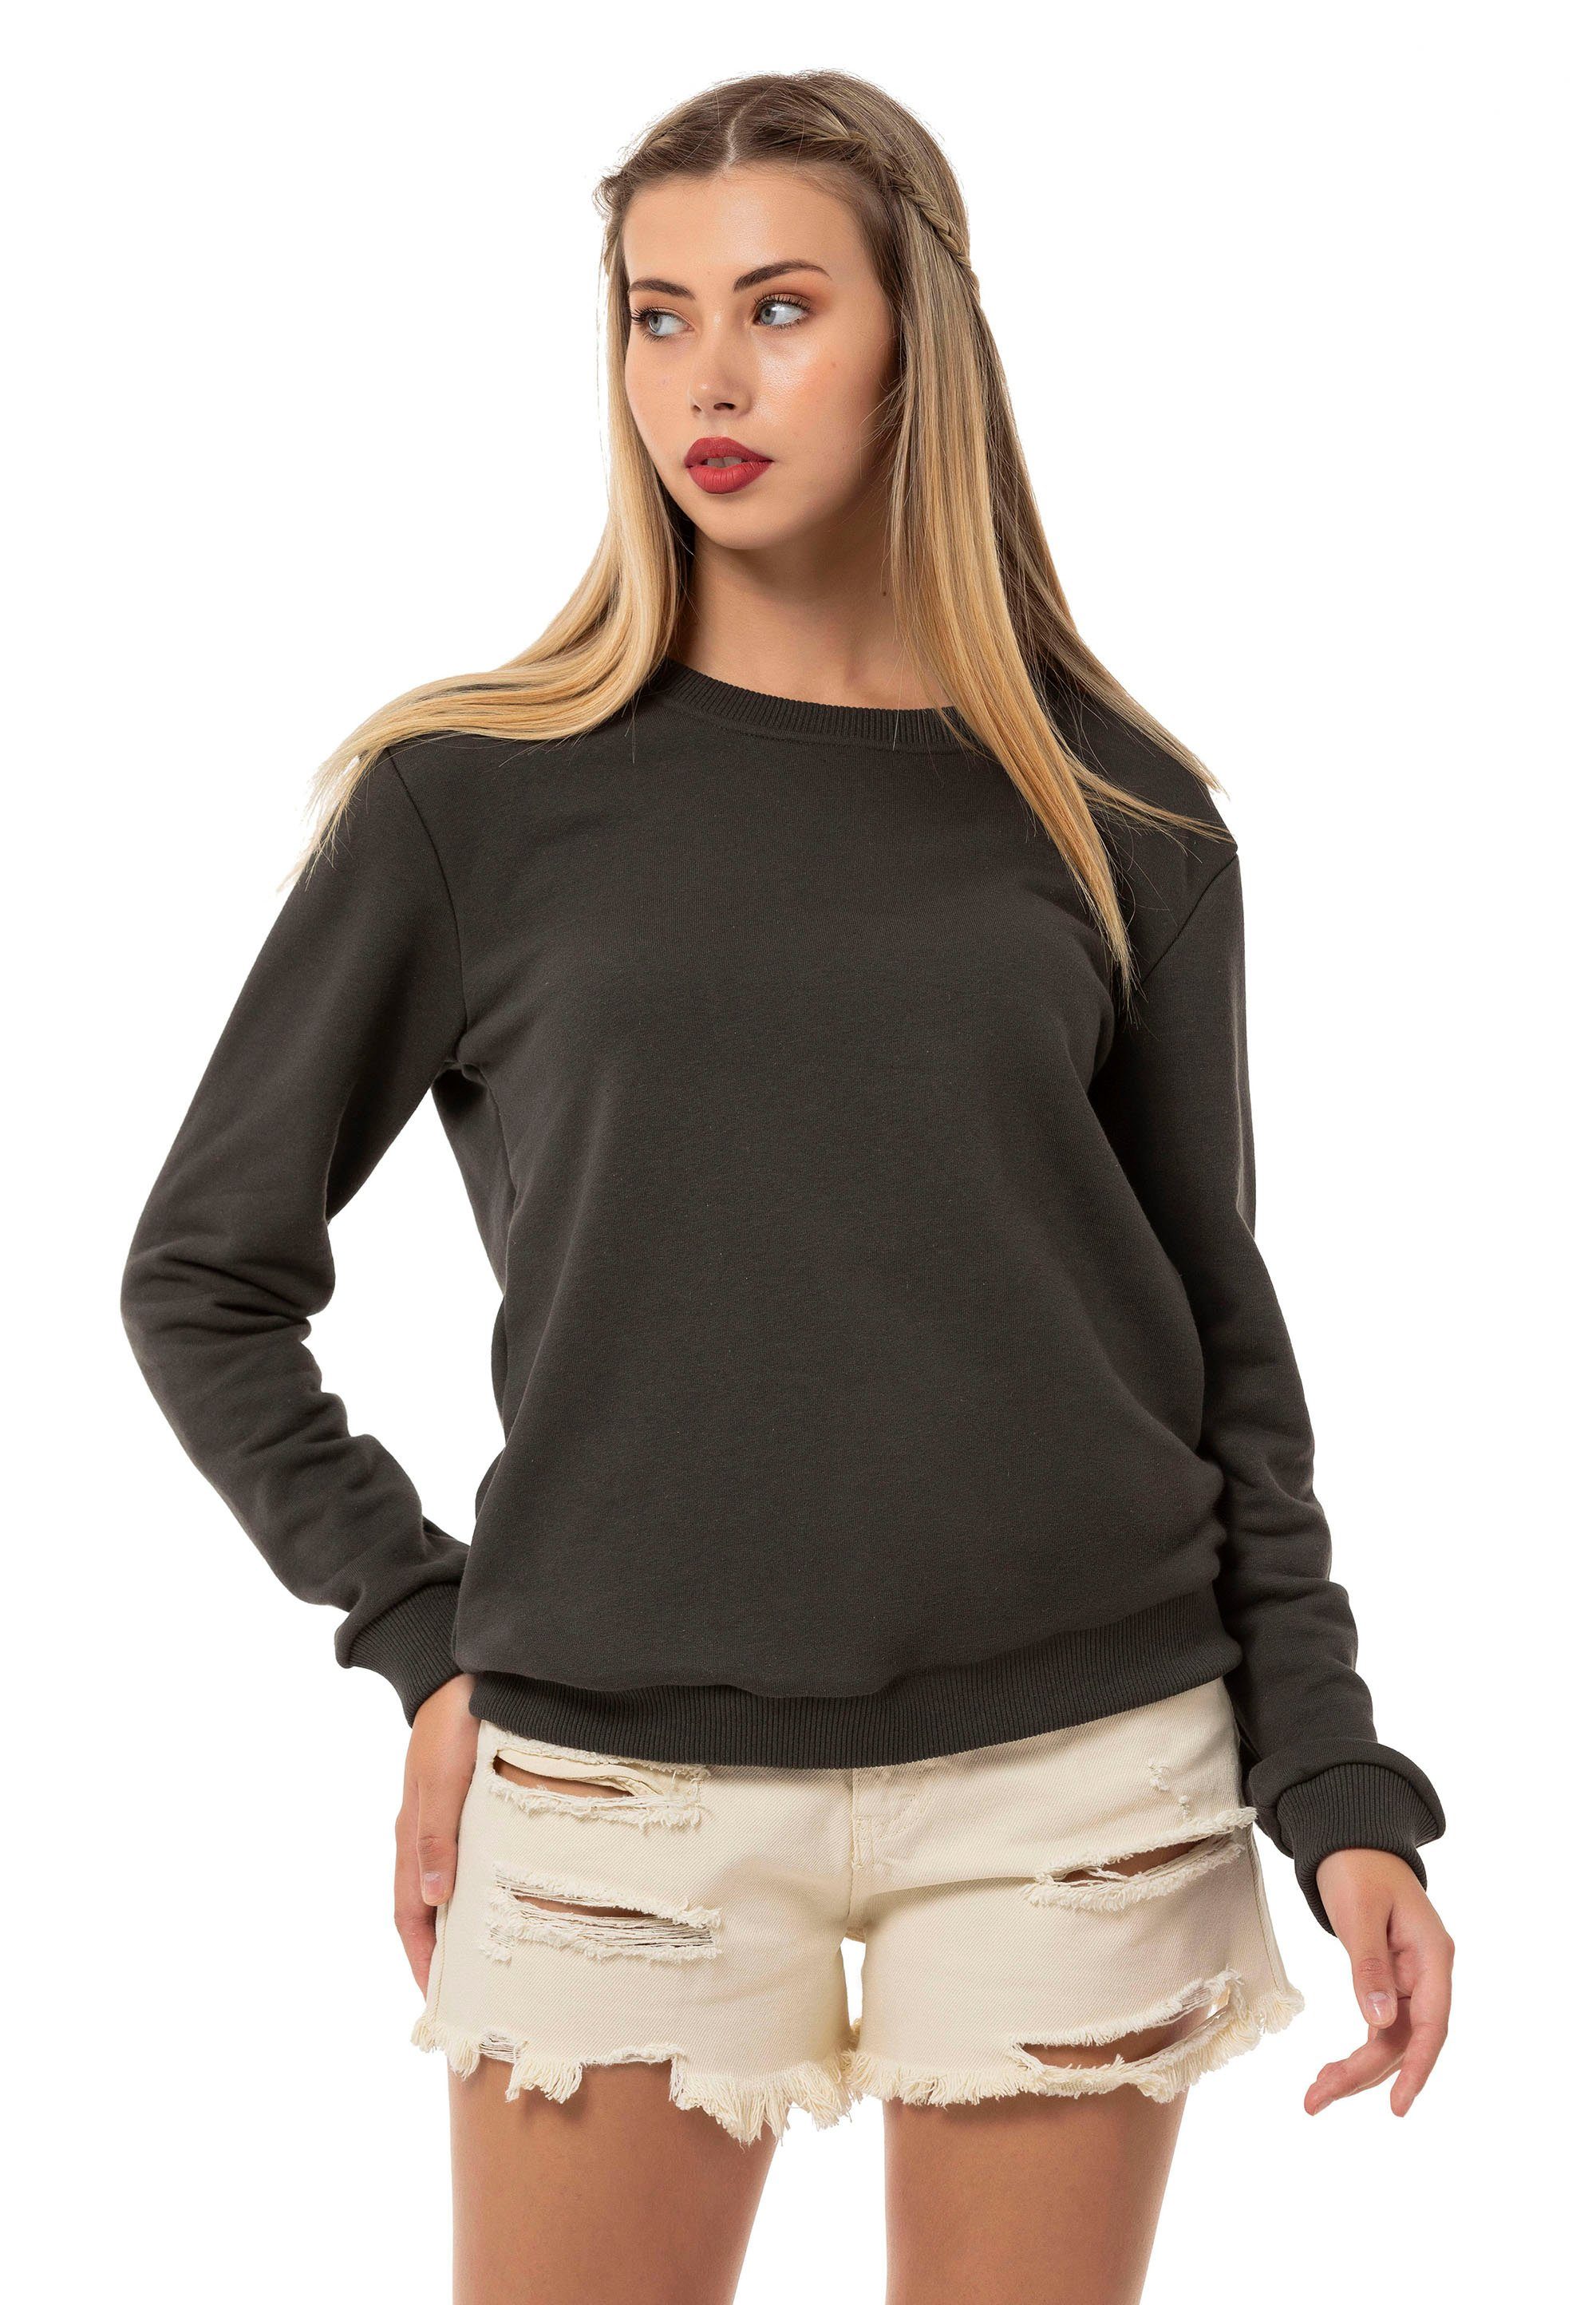 RedBridge Sweatshirt Rundhals Pullover Premium Qualität Khaki | Sweatshirts